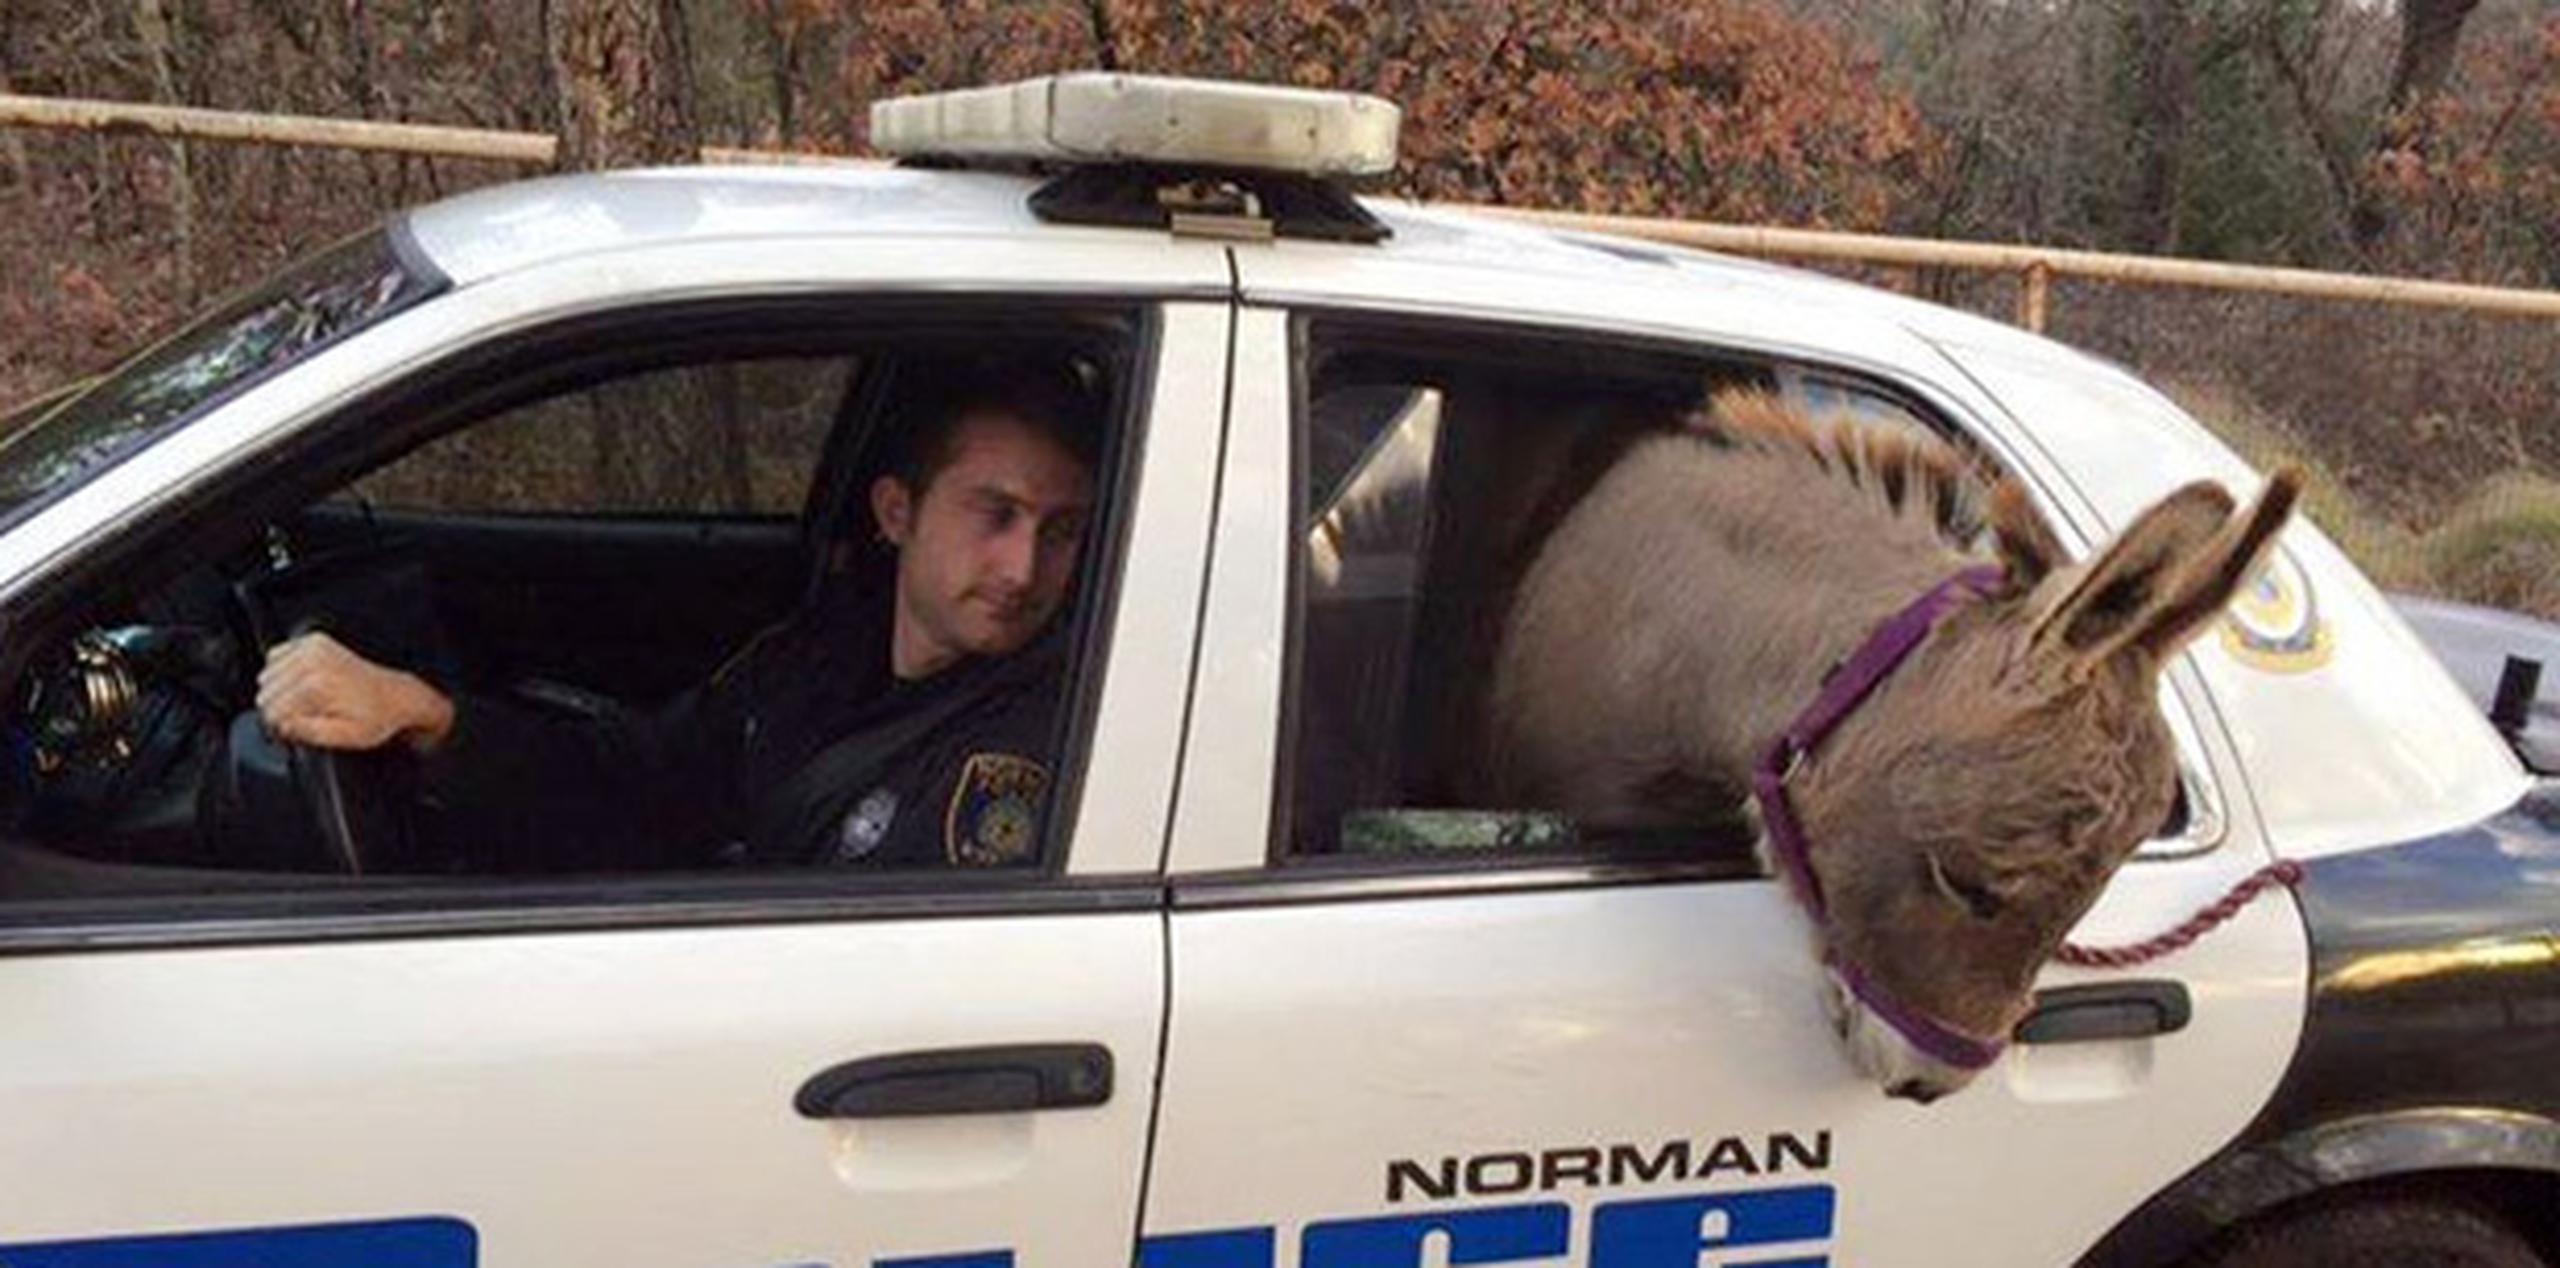 El agente de la policía de Norman Kyle Canaan comentó que había hecho falta empujar y tirar pero que consiguió meter al burro miniatura apodado "Squishy" en la parte trasera de su patrulla. (AP)